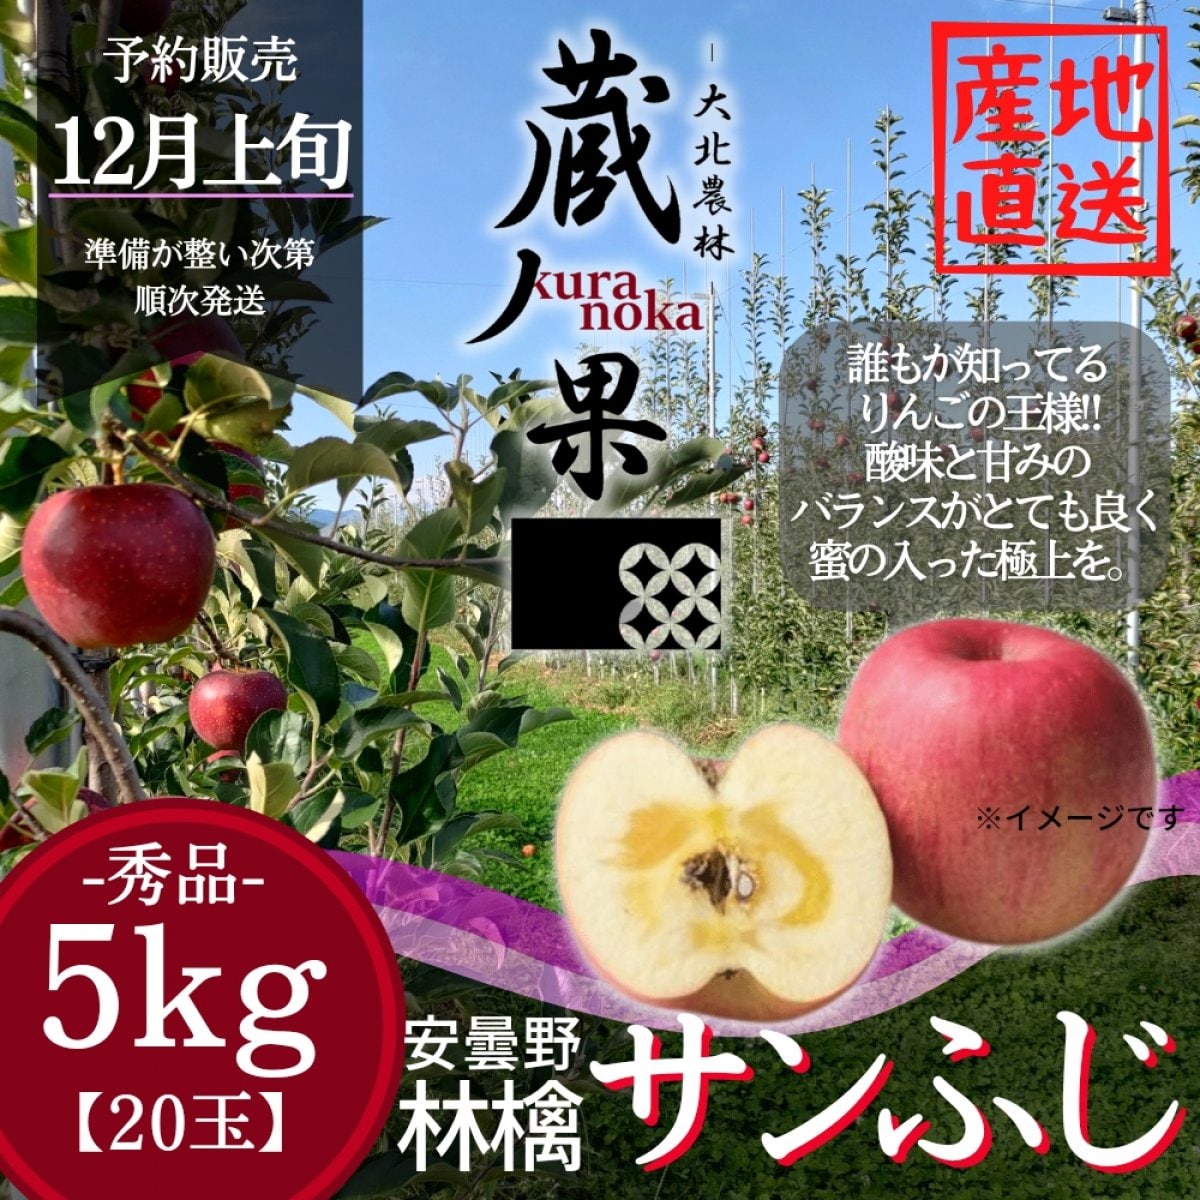 サンふじ【5kg-20玉】長野県安曇野産りんご/予約販売|安曇野の果樹園